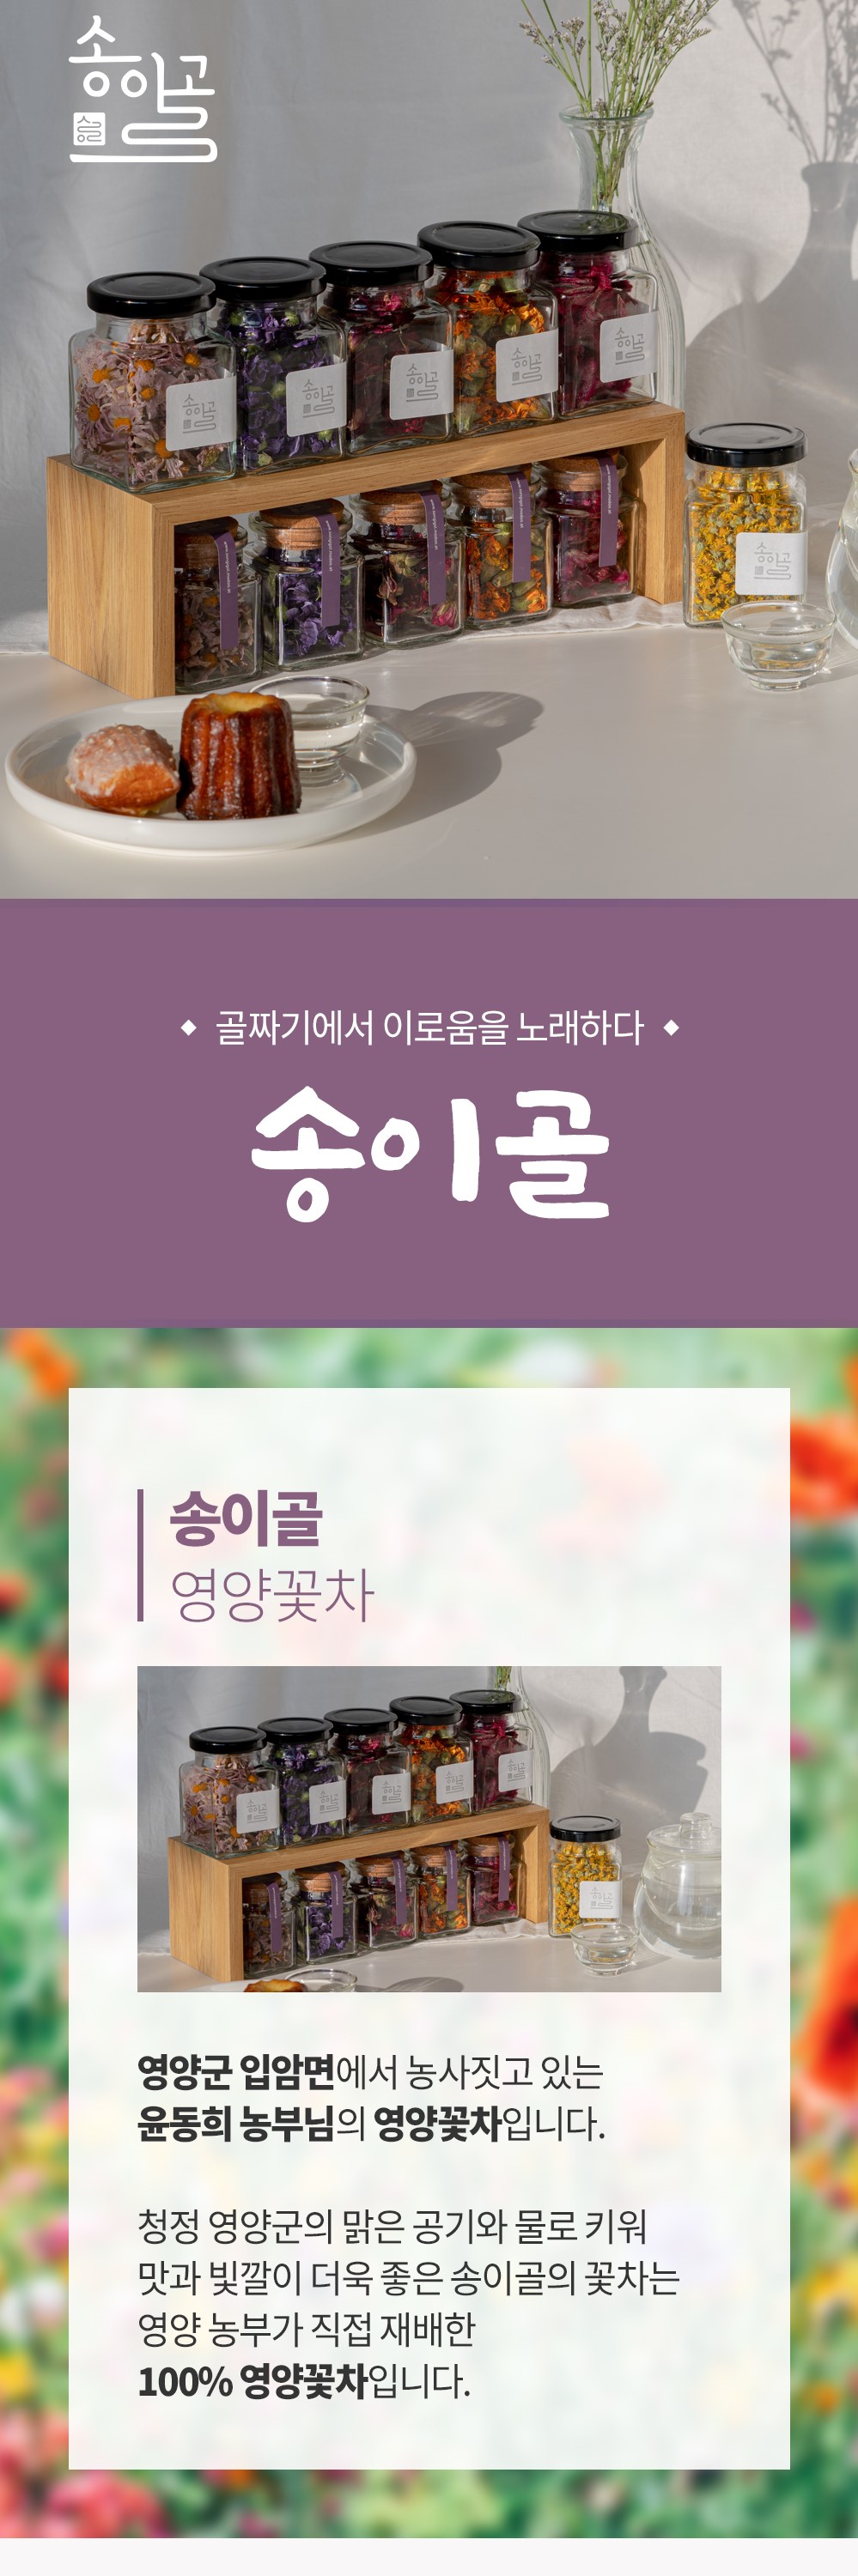 송이골 꽃차 상세페이지 1.jpg